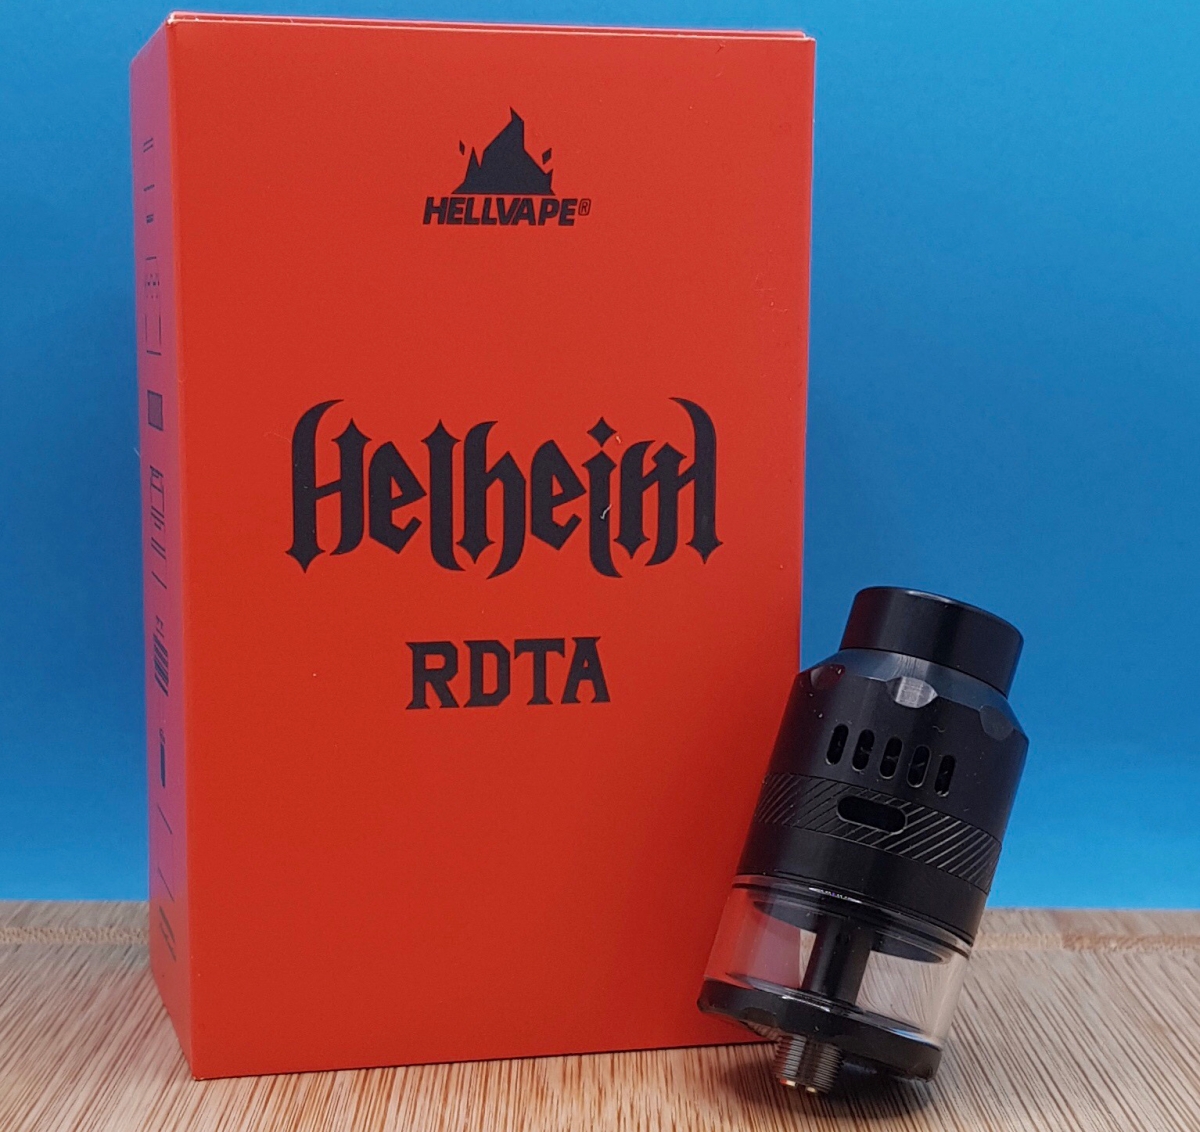 Hellvape Helheim RDTA money shot